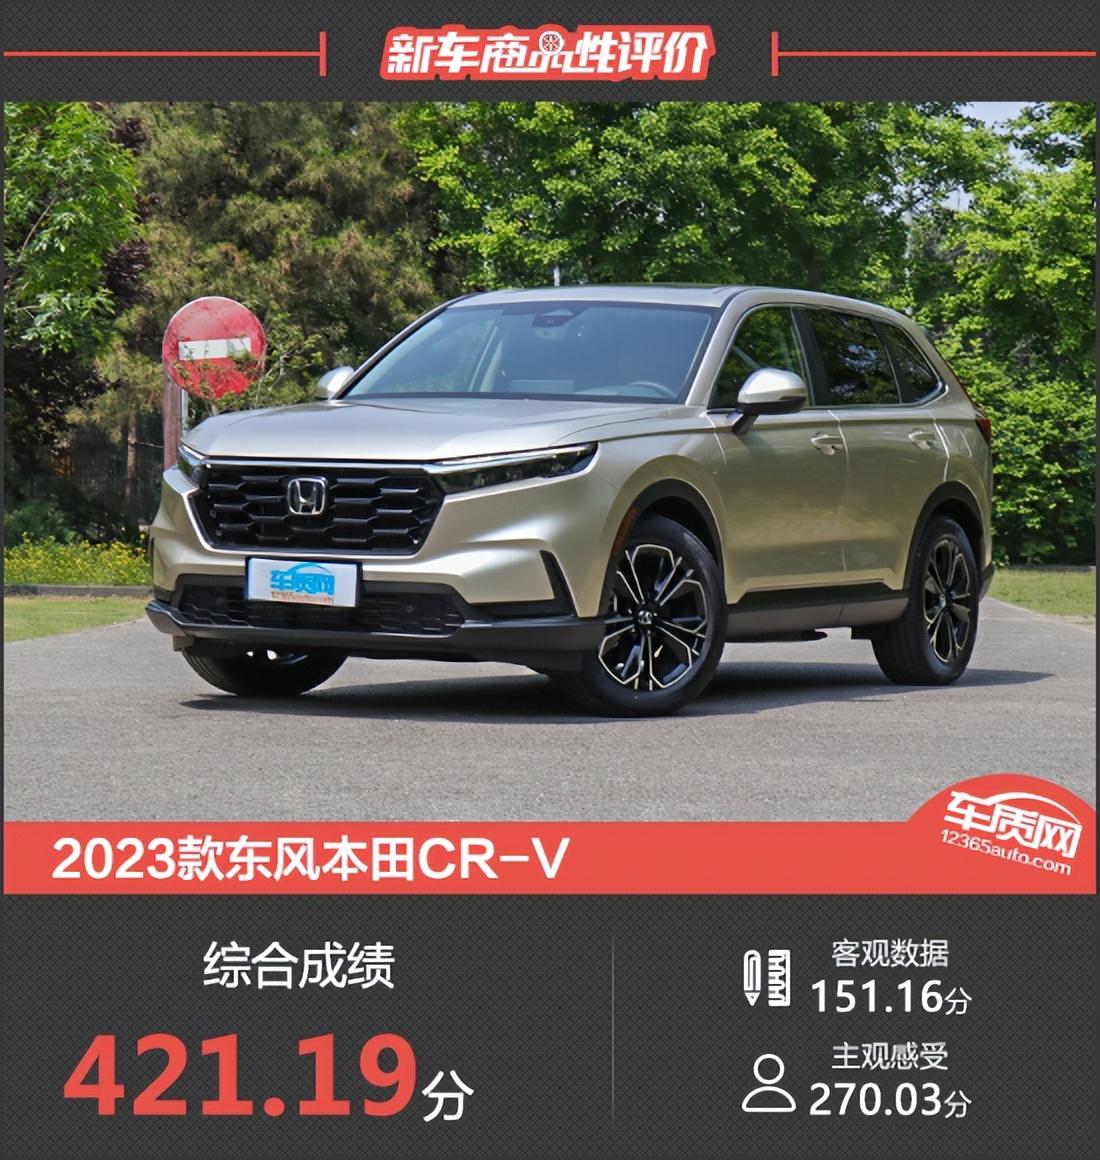 2023款东风本田CR-V新车商品性评价